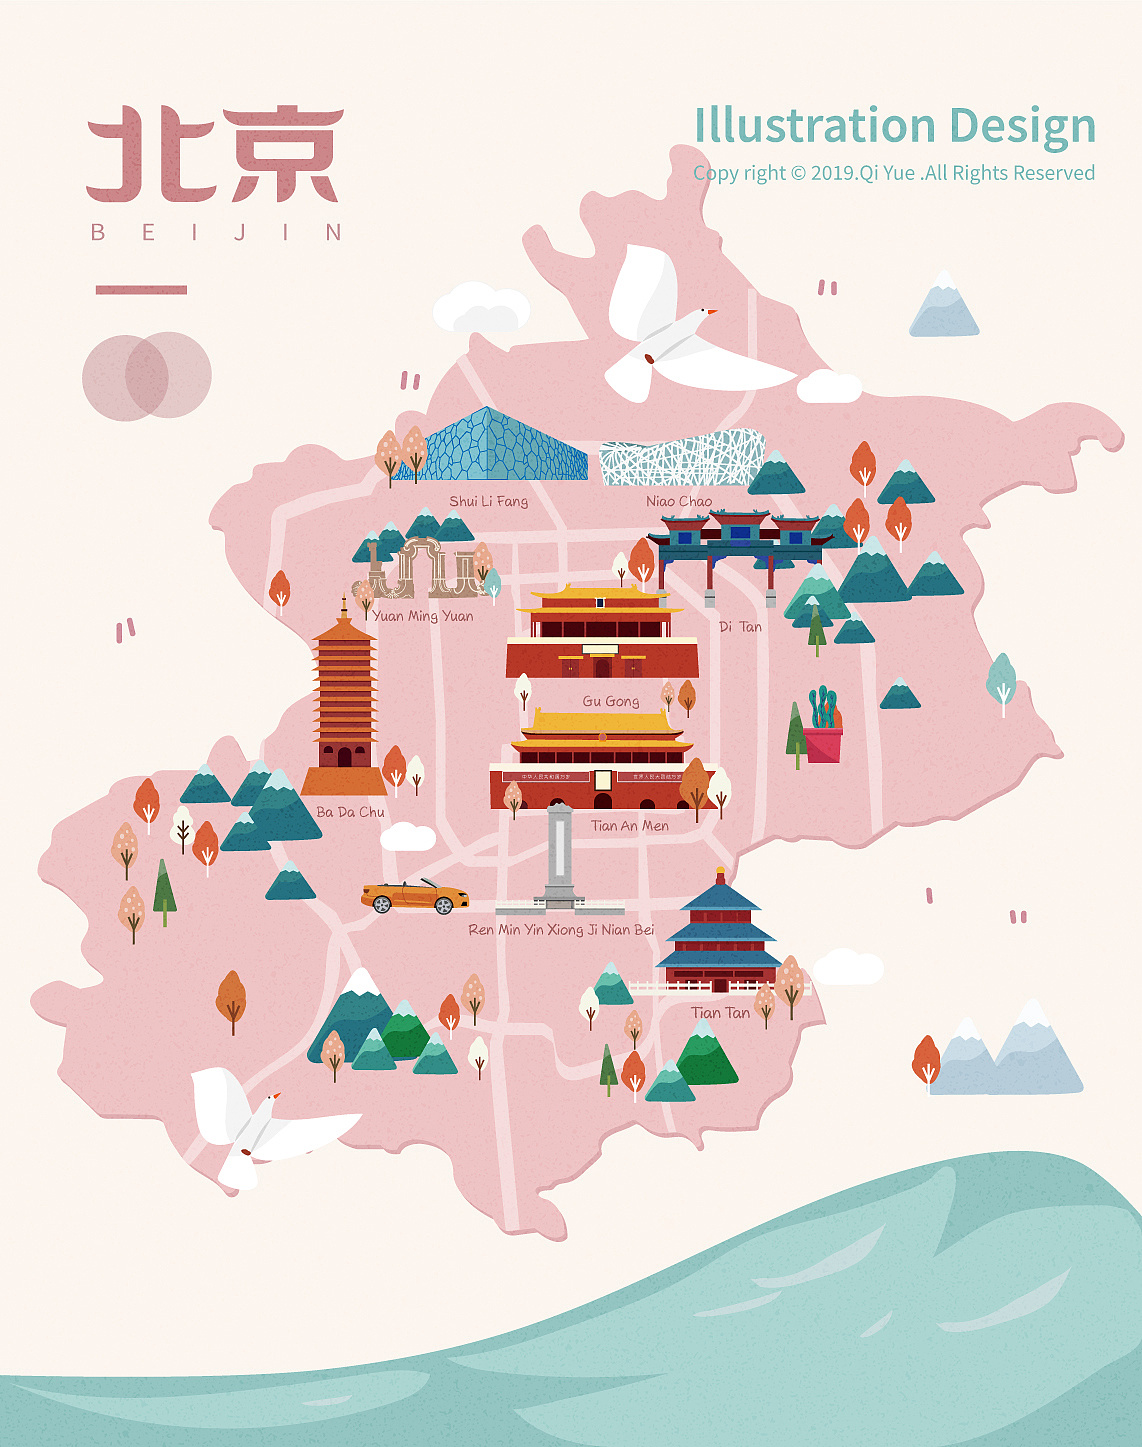 北京城区交通地图2020高清版_交通地图库_地图窝